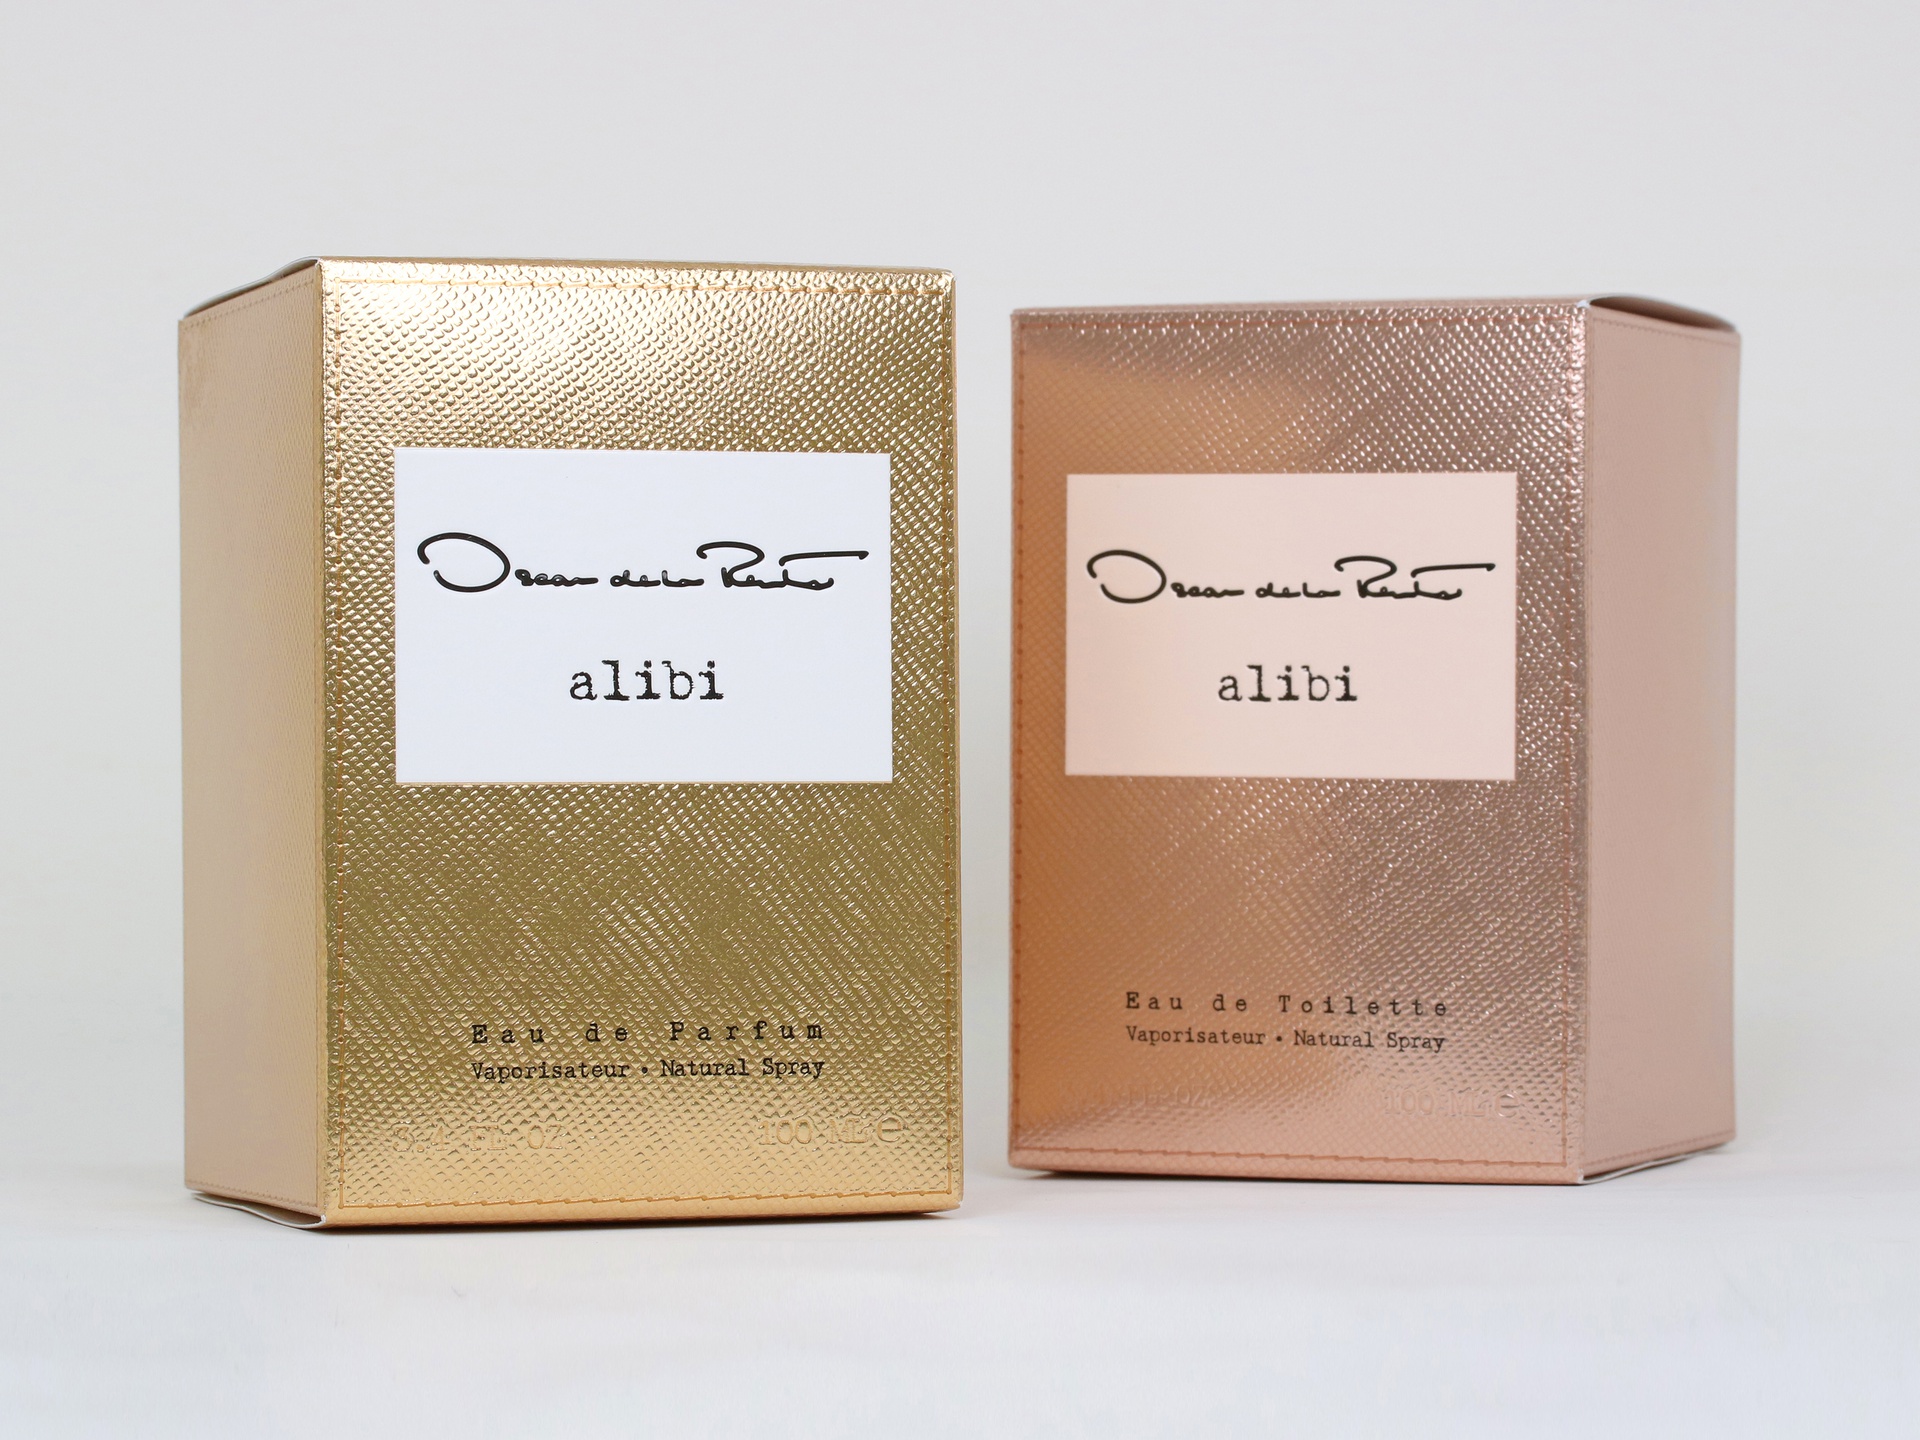 Interparfums' Oscar de la Renta Alibi packaging